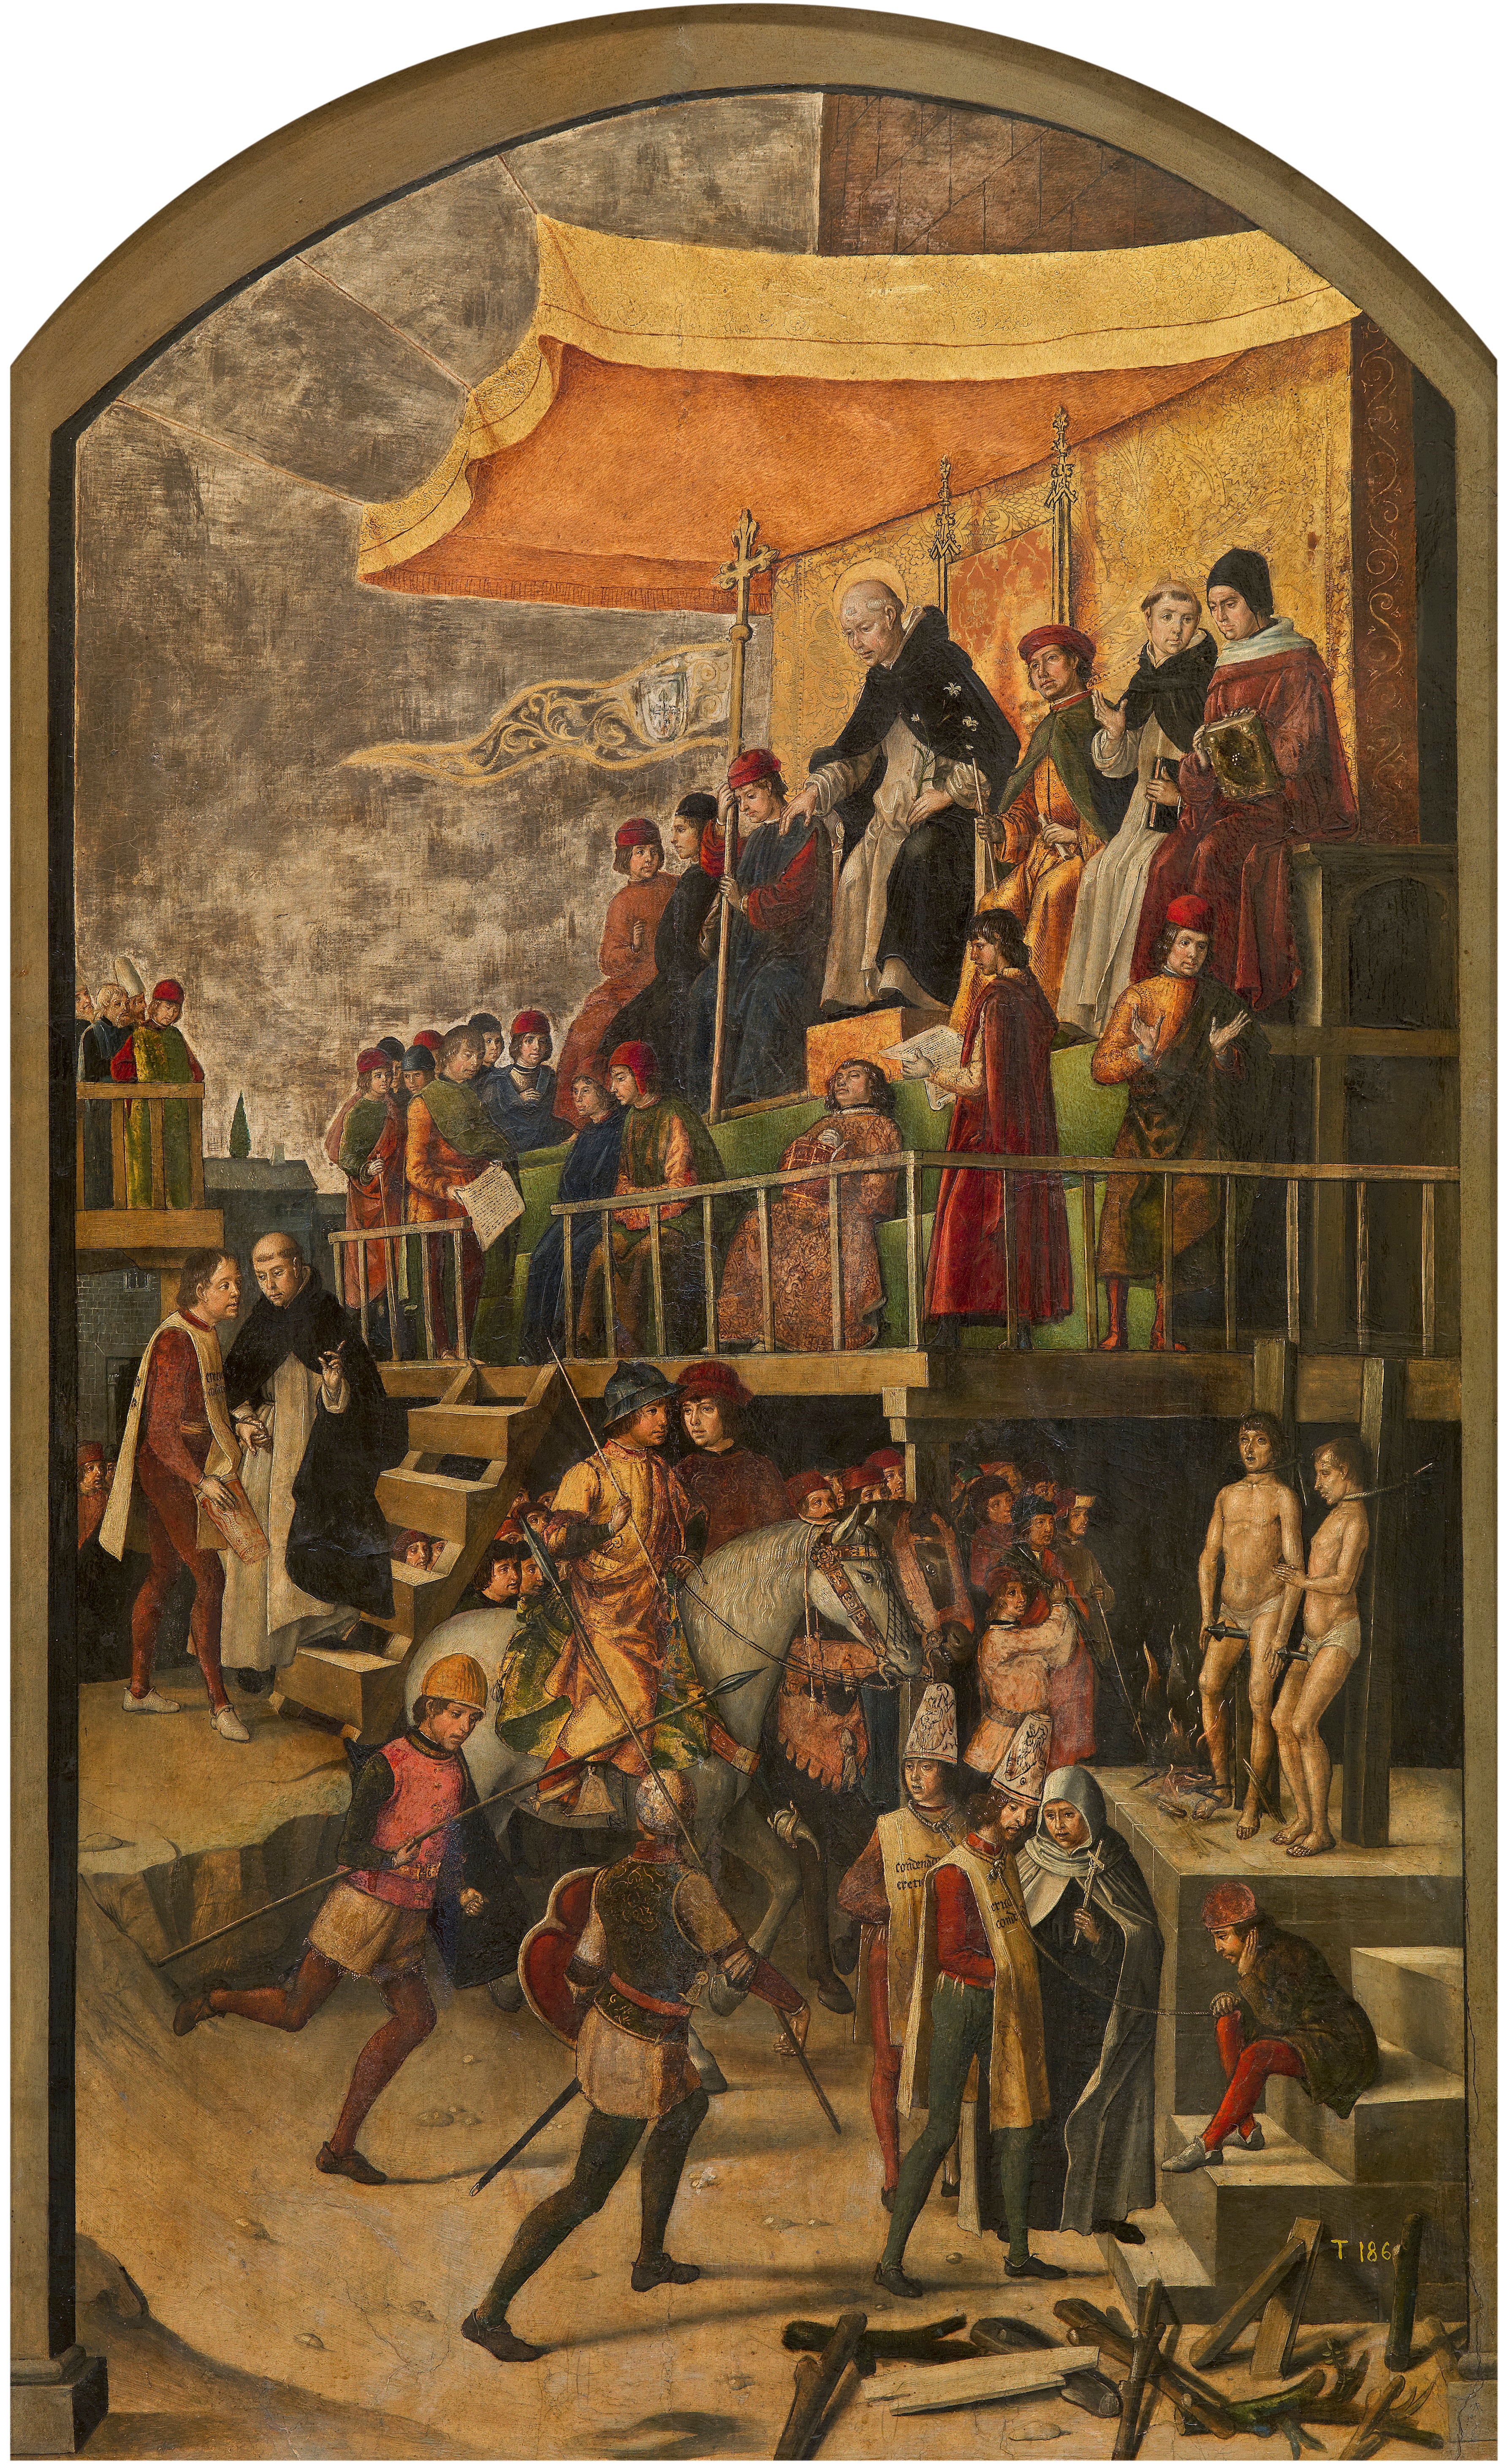 'Auto de fe', presidido por Santo Domingo de Guzmán Pedro Berruguete Óleo sobre tabla, 154 x 92 cm h. 1491-99 Madrid, Museo Nacional del Prado, P-618.